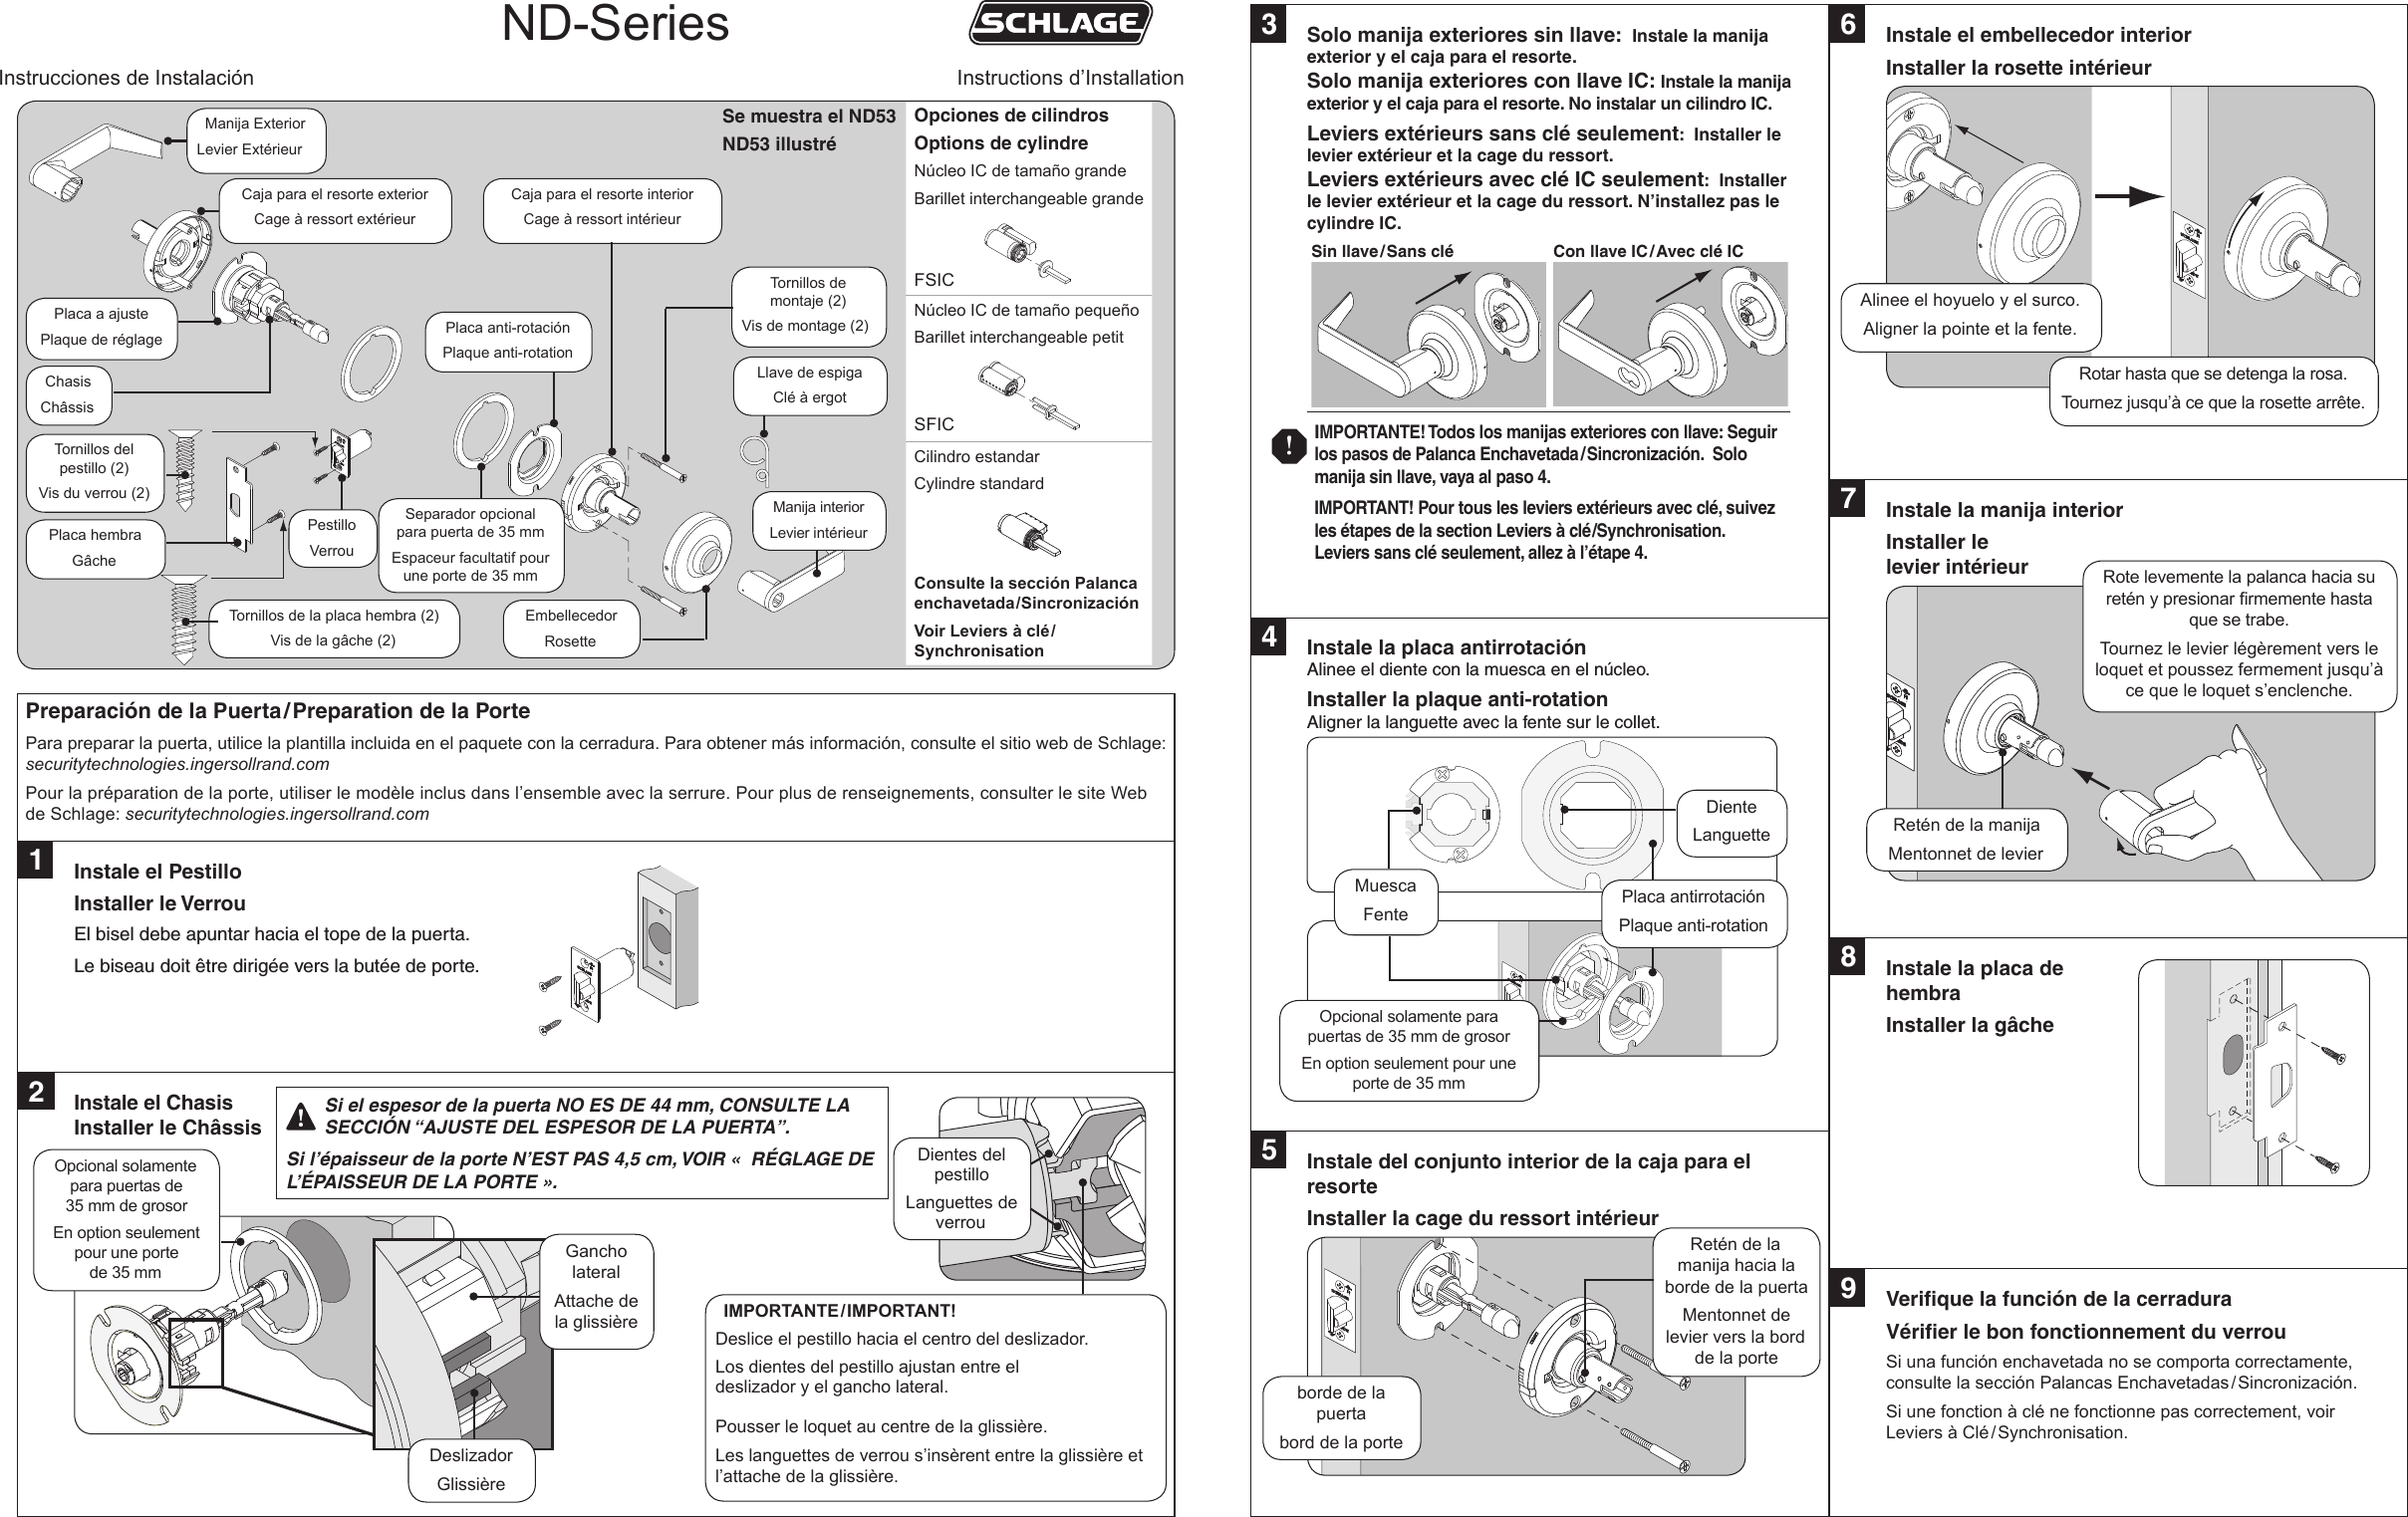 Schlage ND Series Standard Installation Instructions (locks